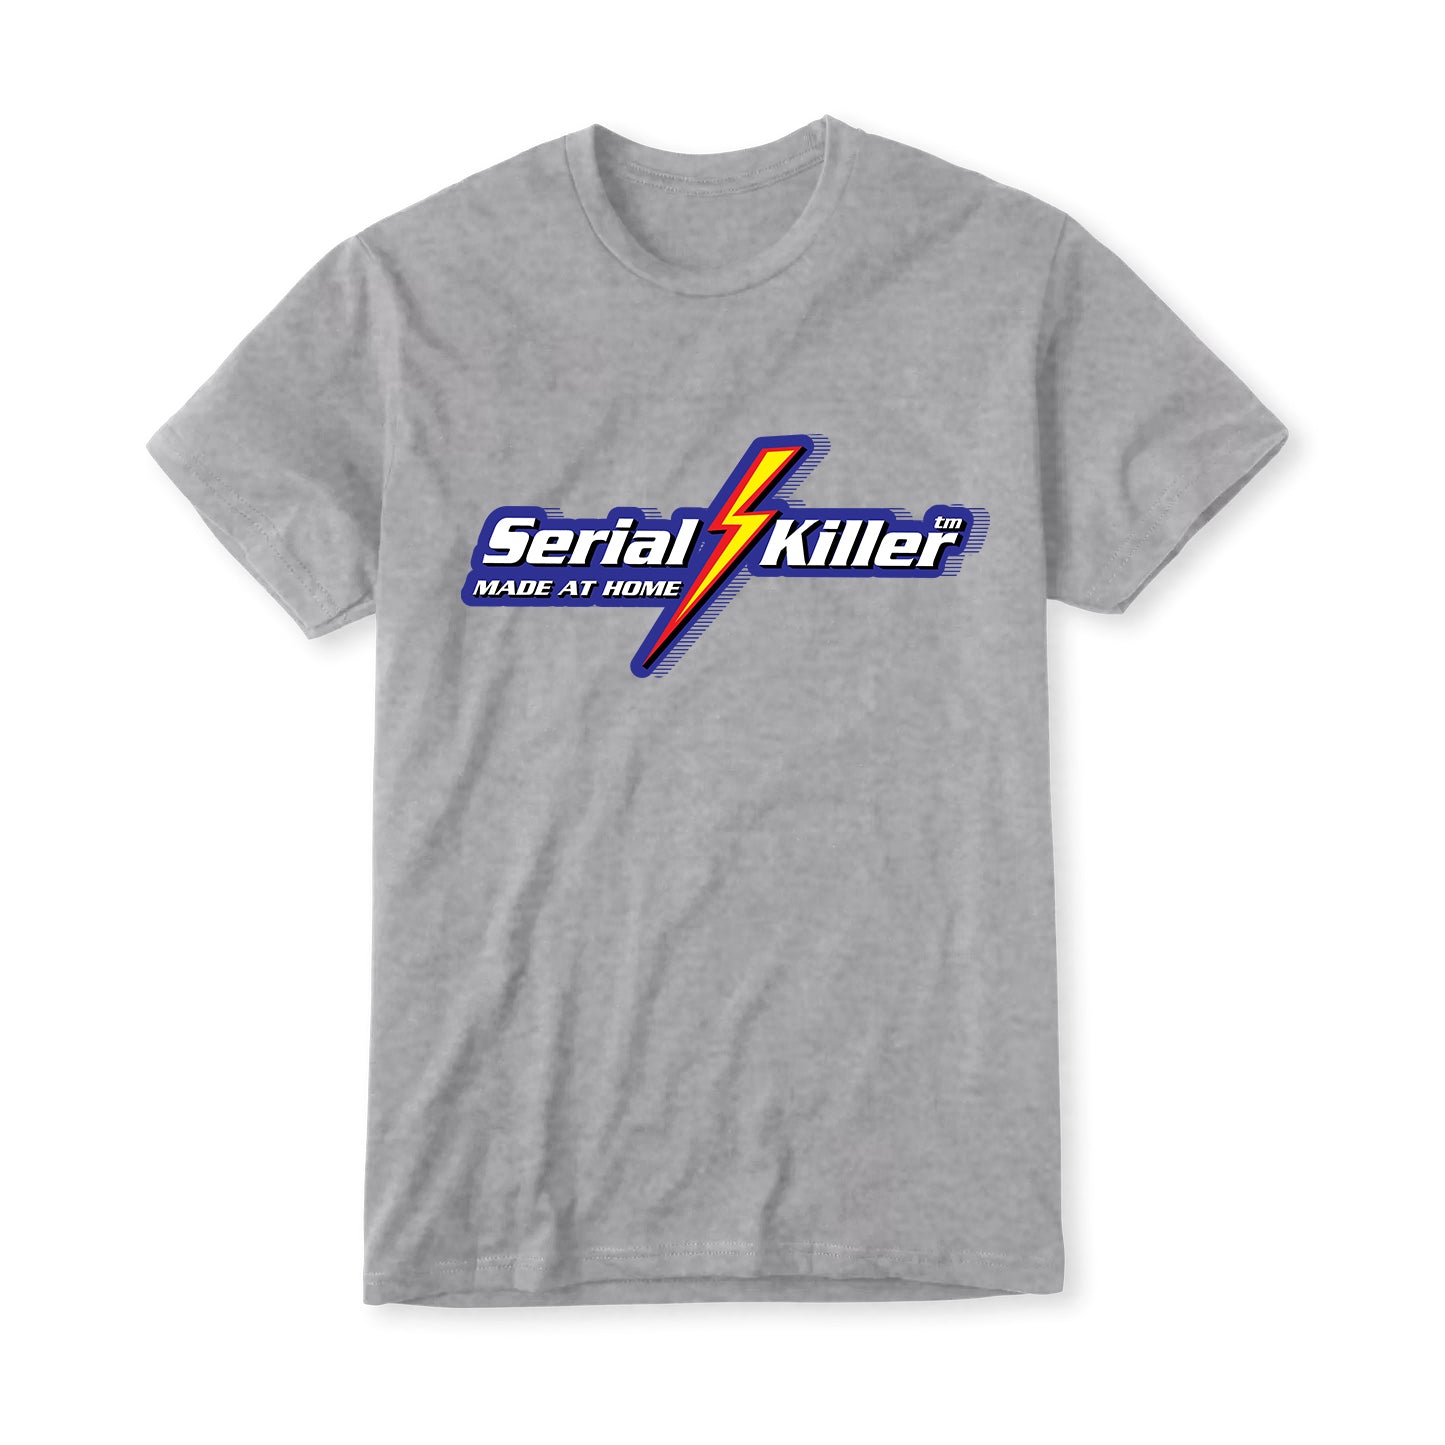 Serial Bolt Killer Men's Tshirt